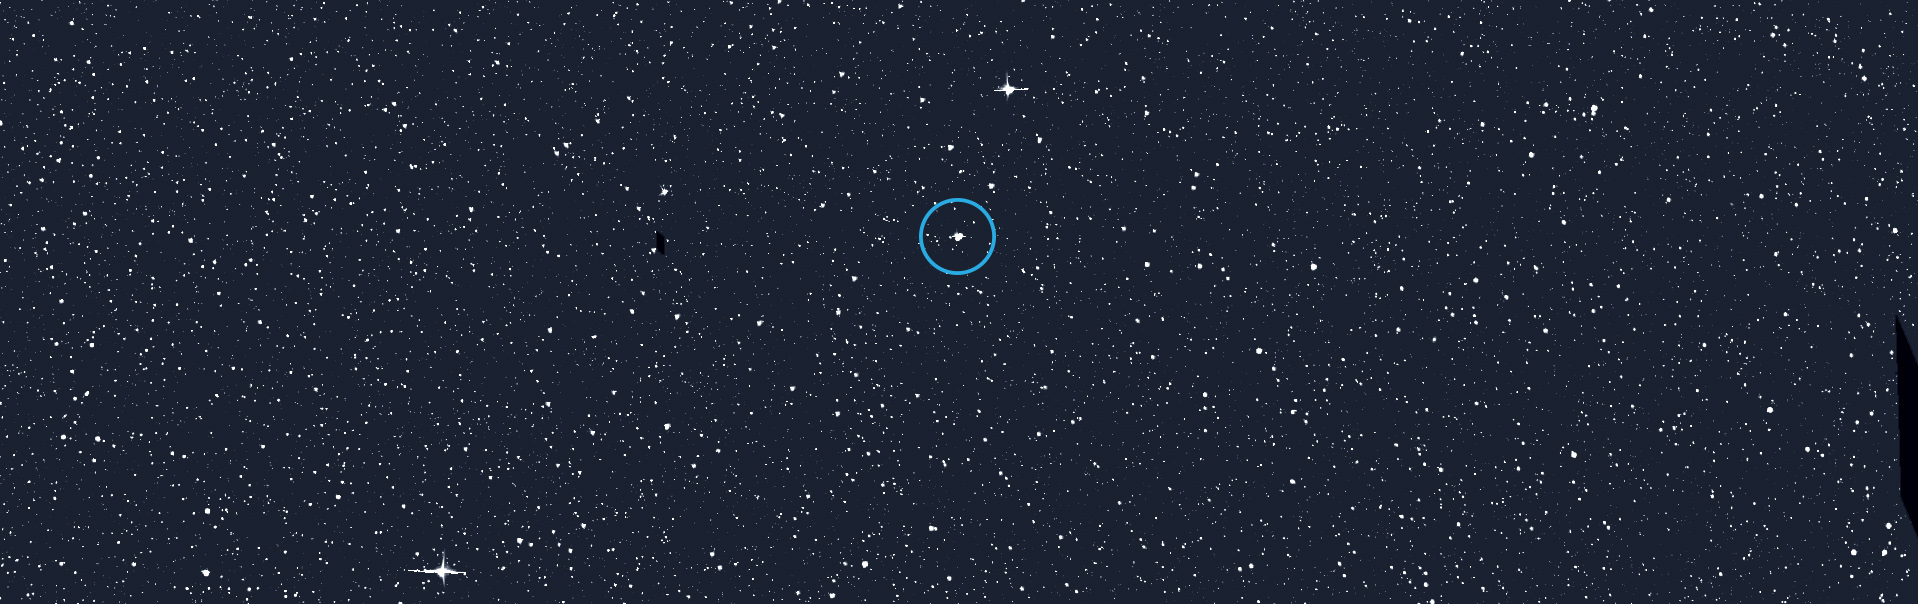 L'étoile Alpha Draconis (encerclée), également connue sous le nom de Thuban dans l'ancienne Égypte, est connue depuis longtemps pour être un système binaire. Maintenant, les données du Tess de la Nasa montrent que ses deux étoiles subissent des éclipses mutuelles. © Nasa, MIT, Tess